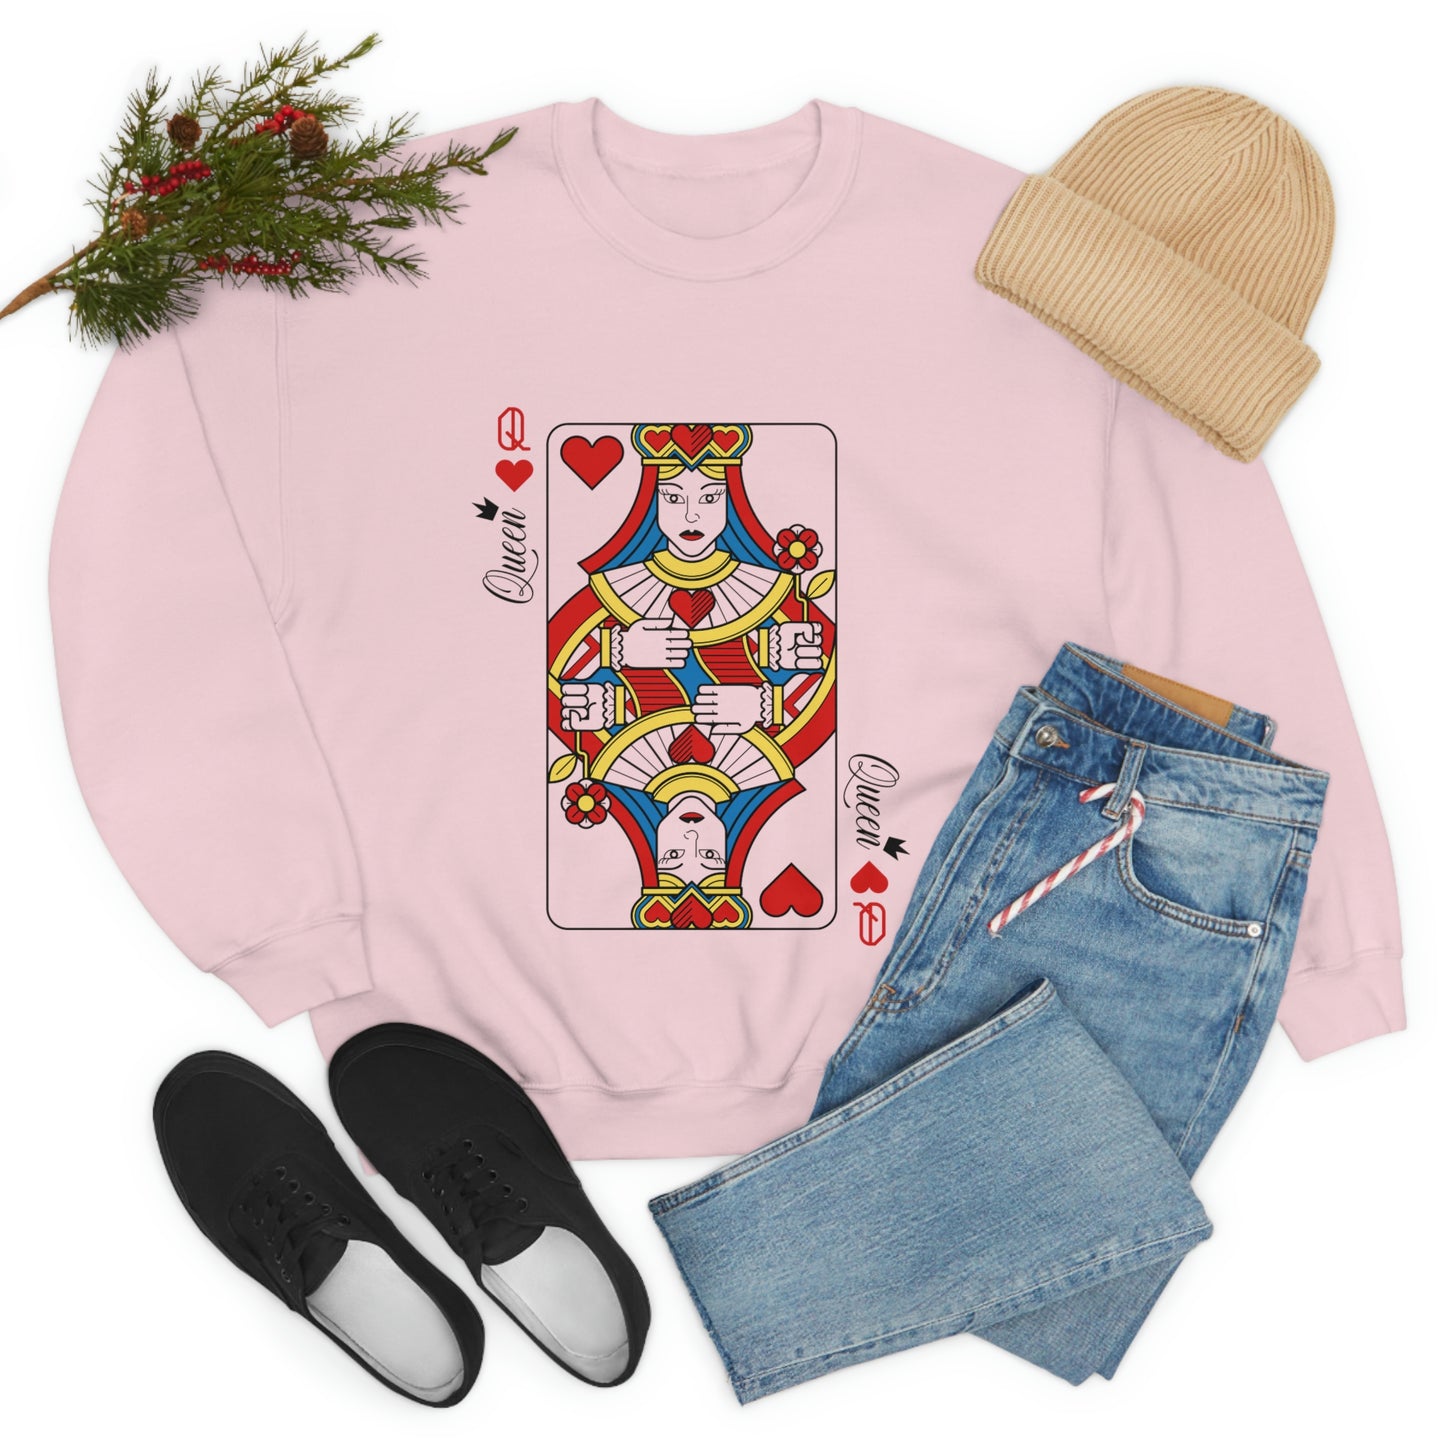 Queen of Hearts Graphic Crewneck Sweatshirt